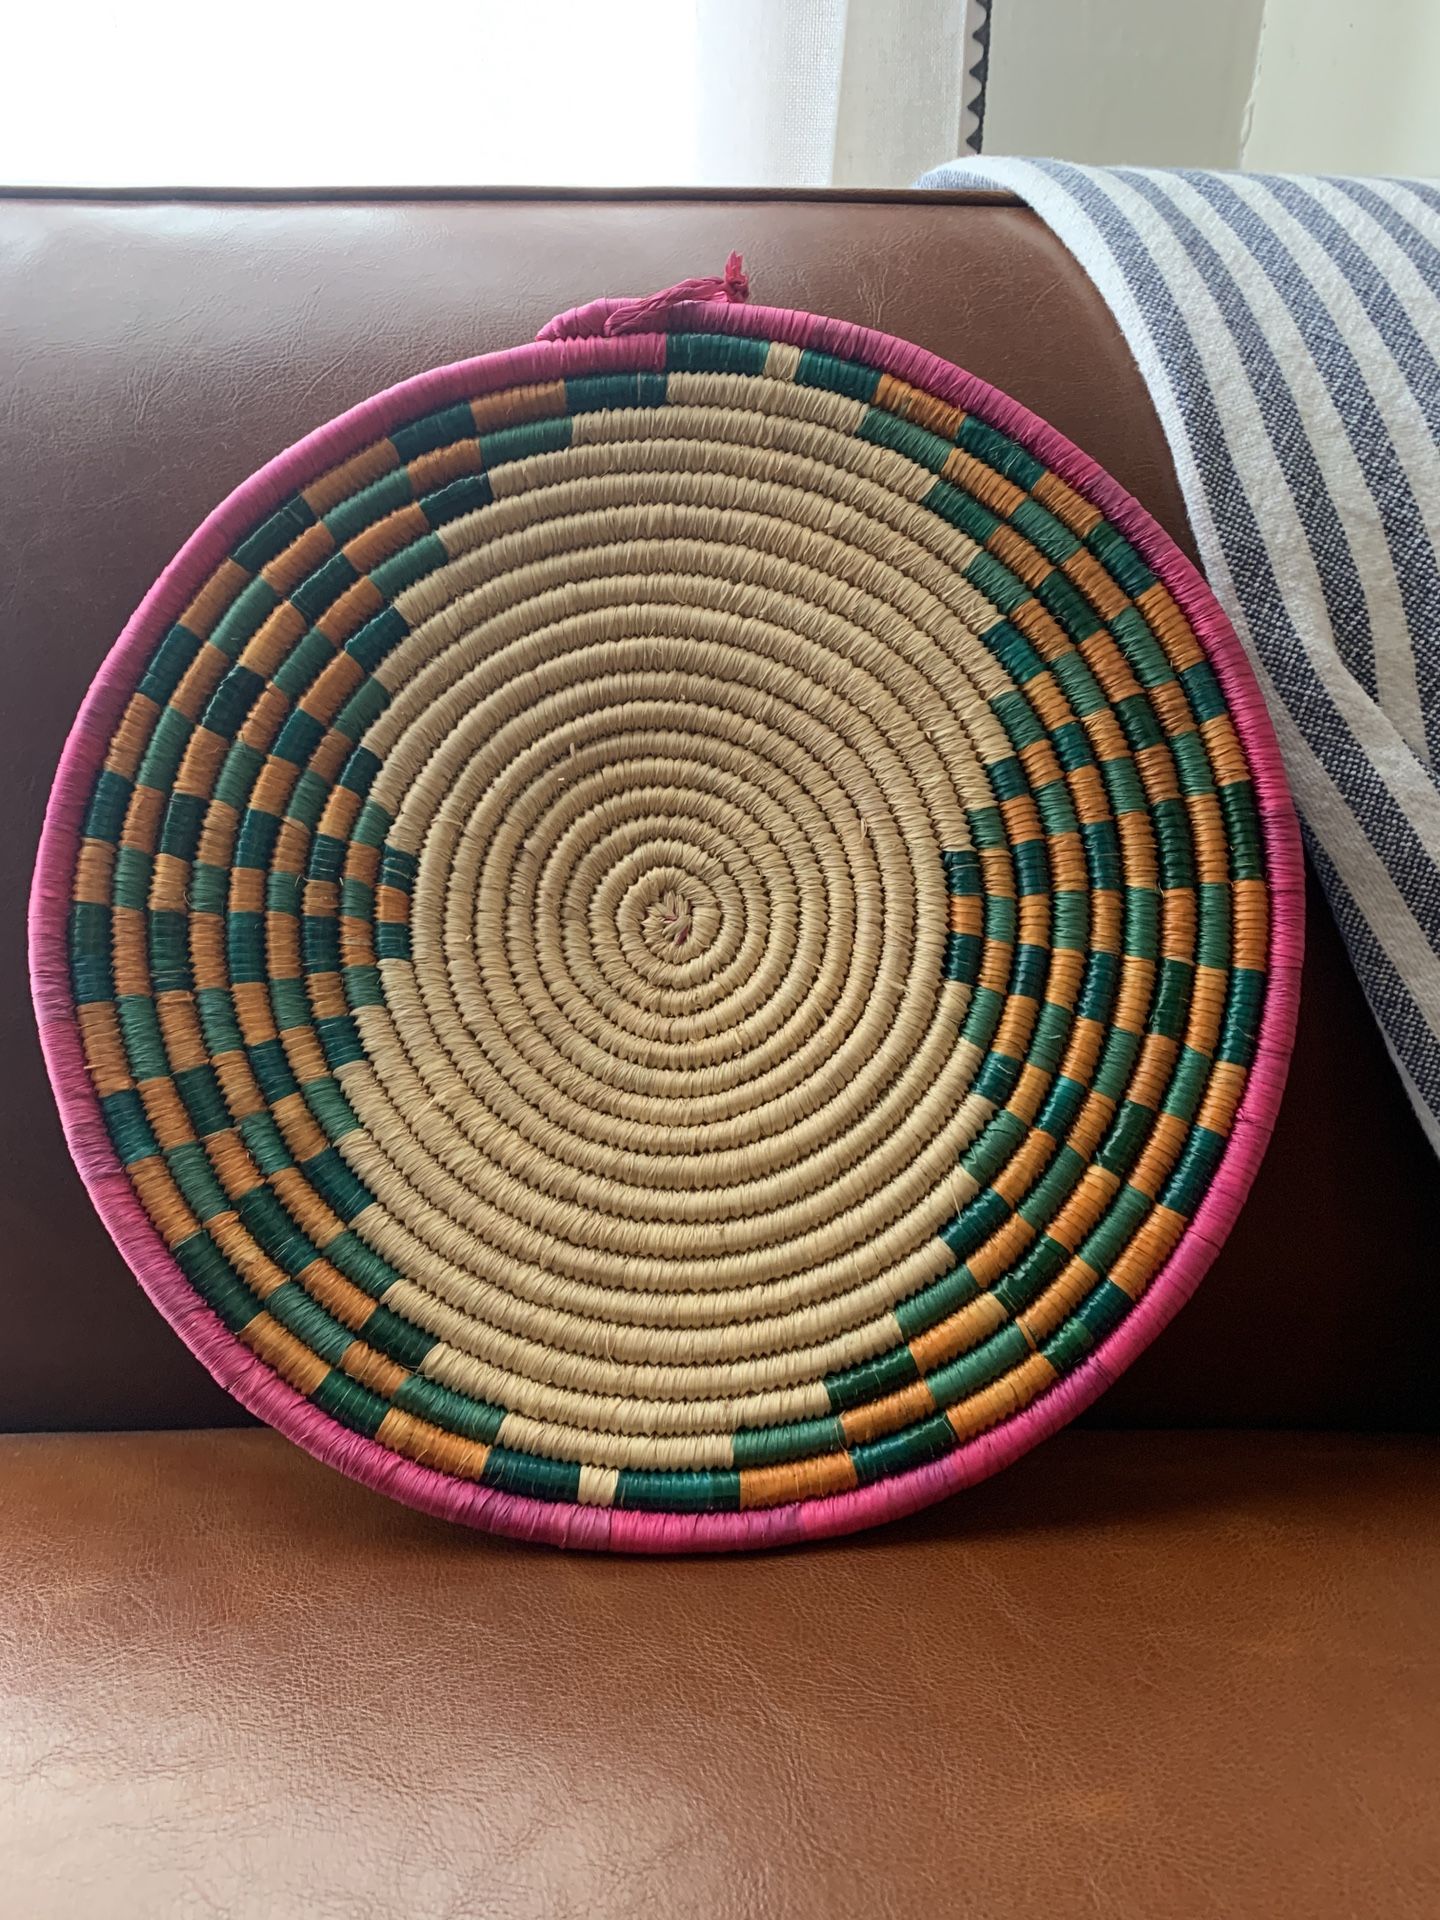 Large wicker Basket / Wall hanging / Pink / Green / Orange / Rattan / Art / vintage decor